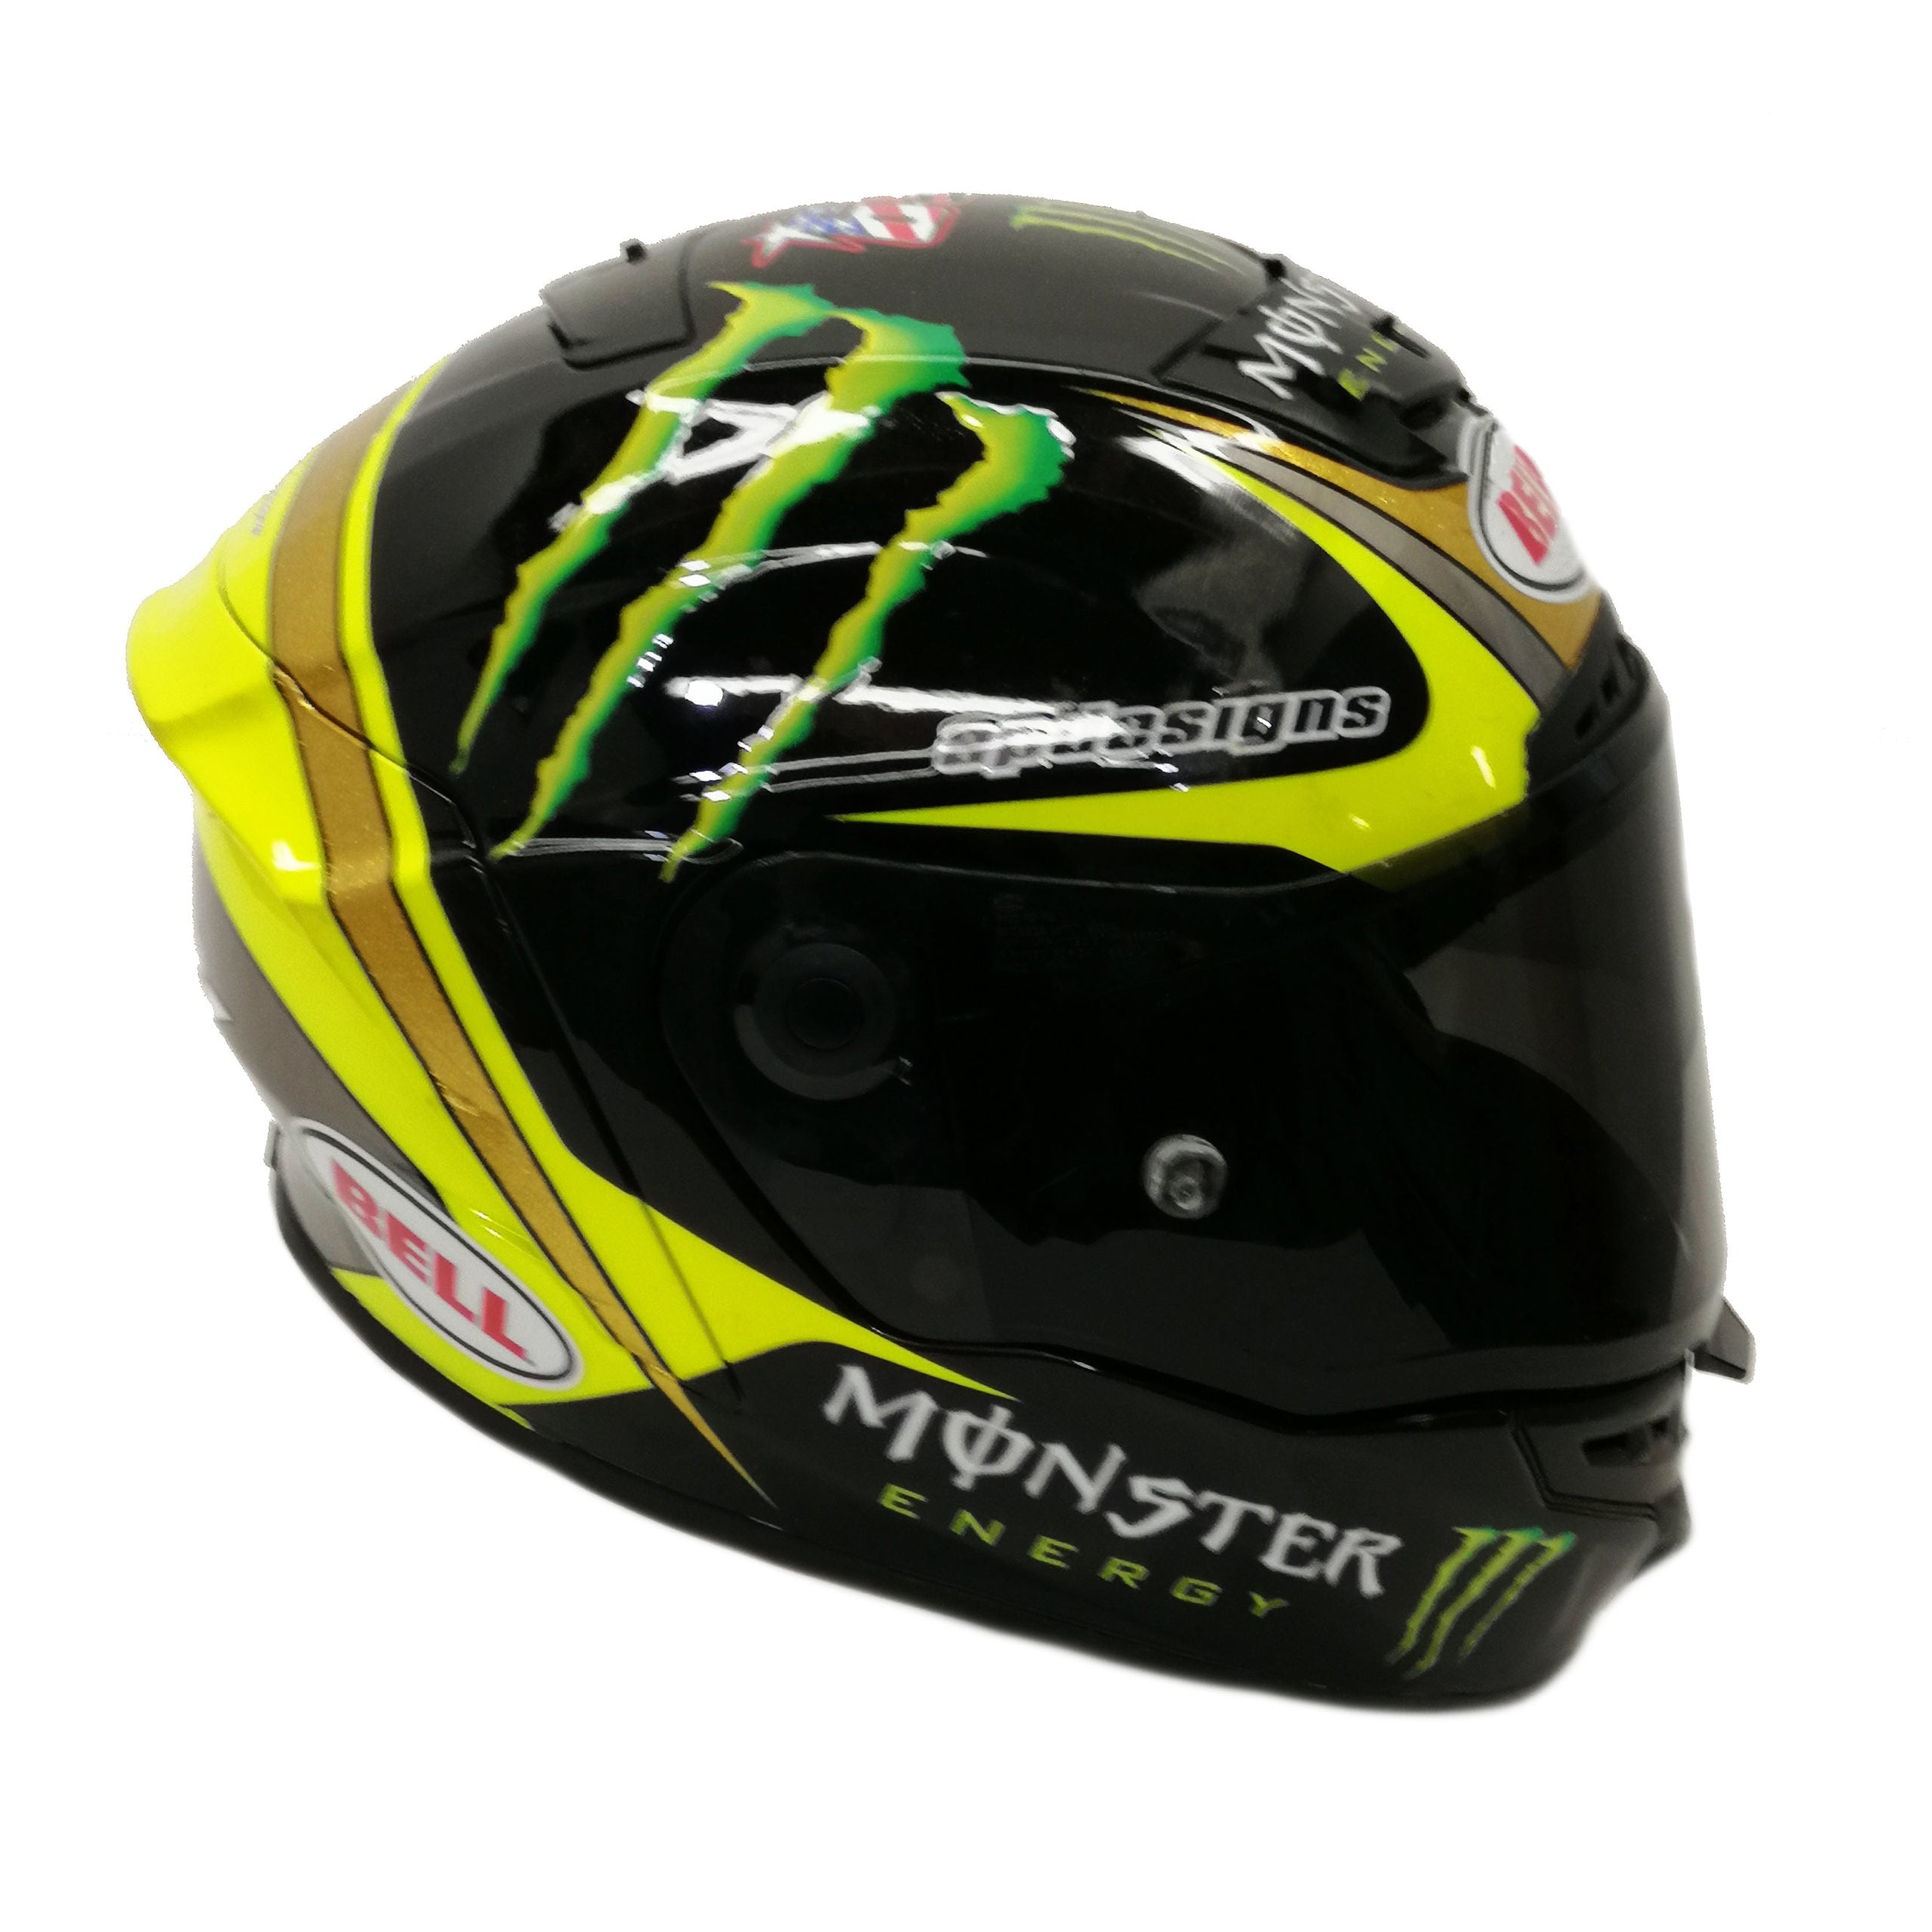 2019 Jared Mees Signed Race Used Daytona Flat Track Helmet